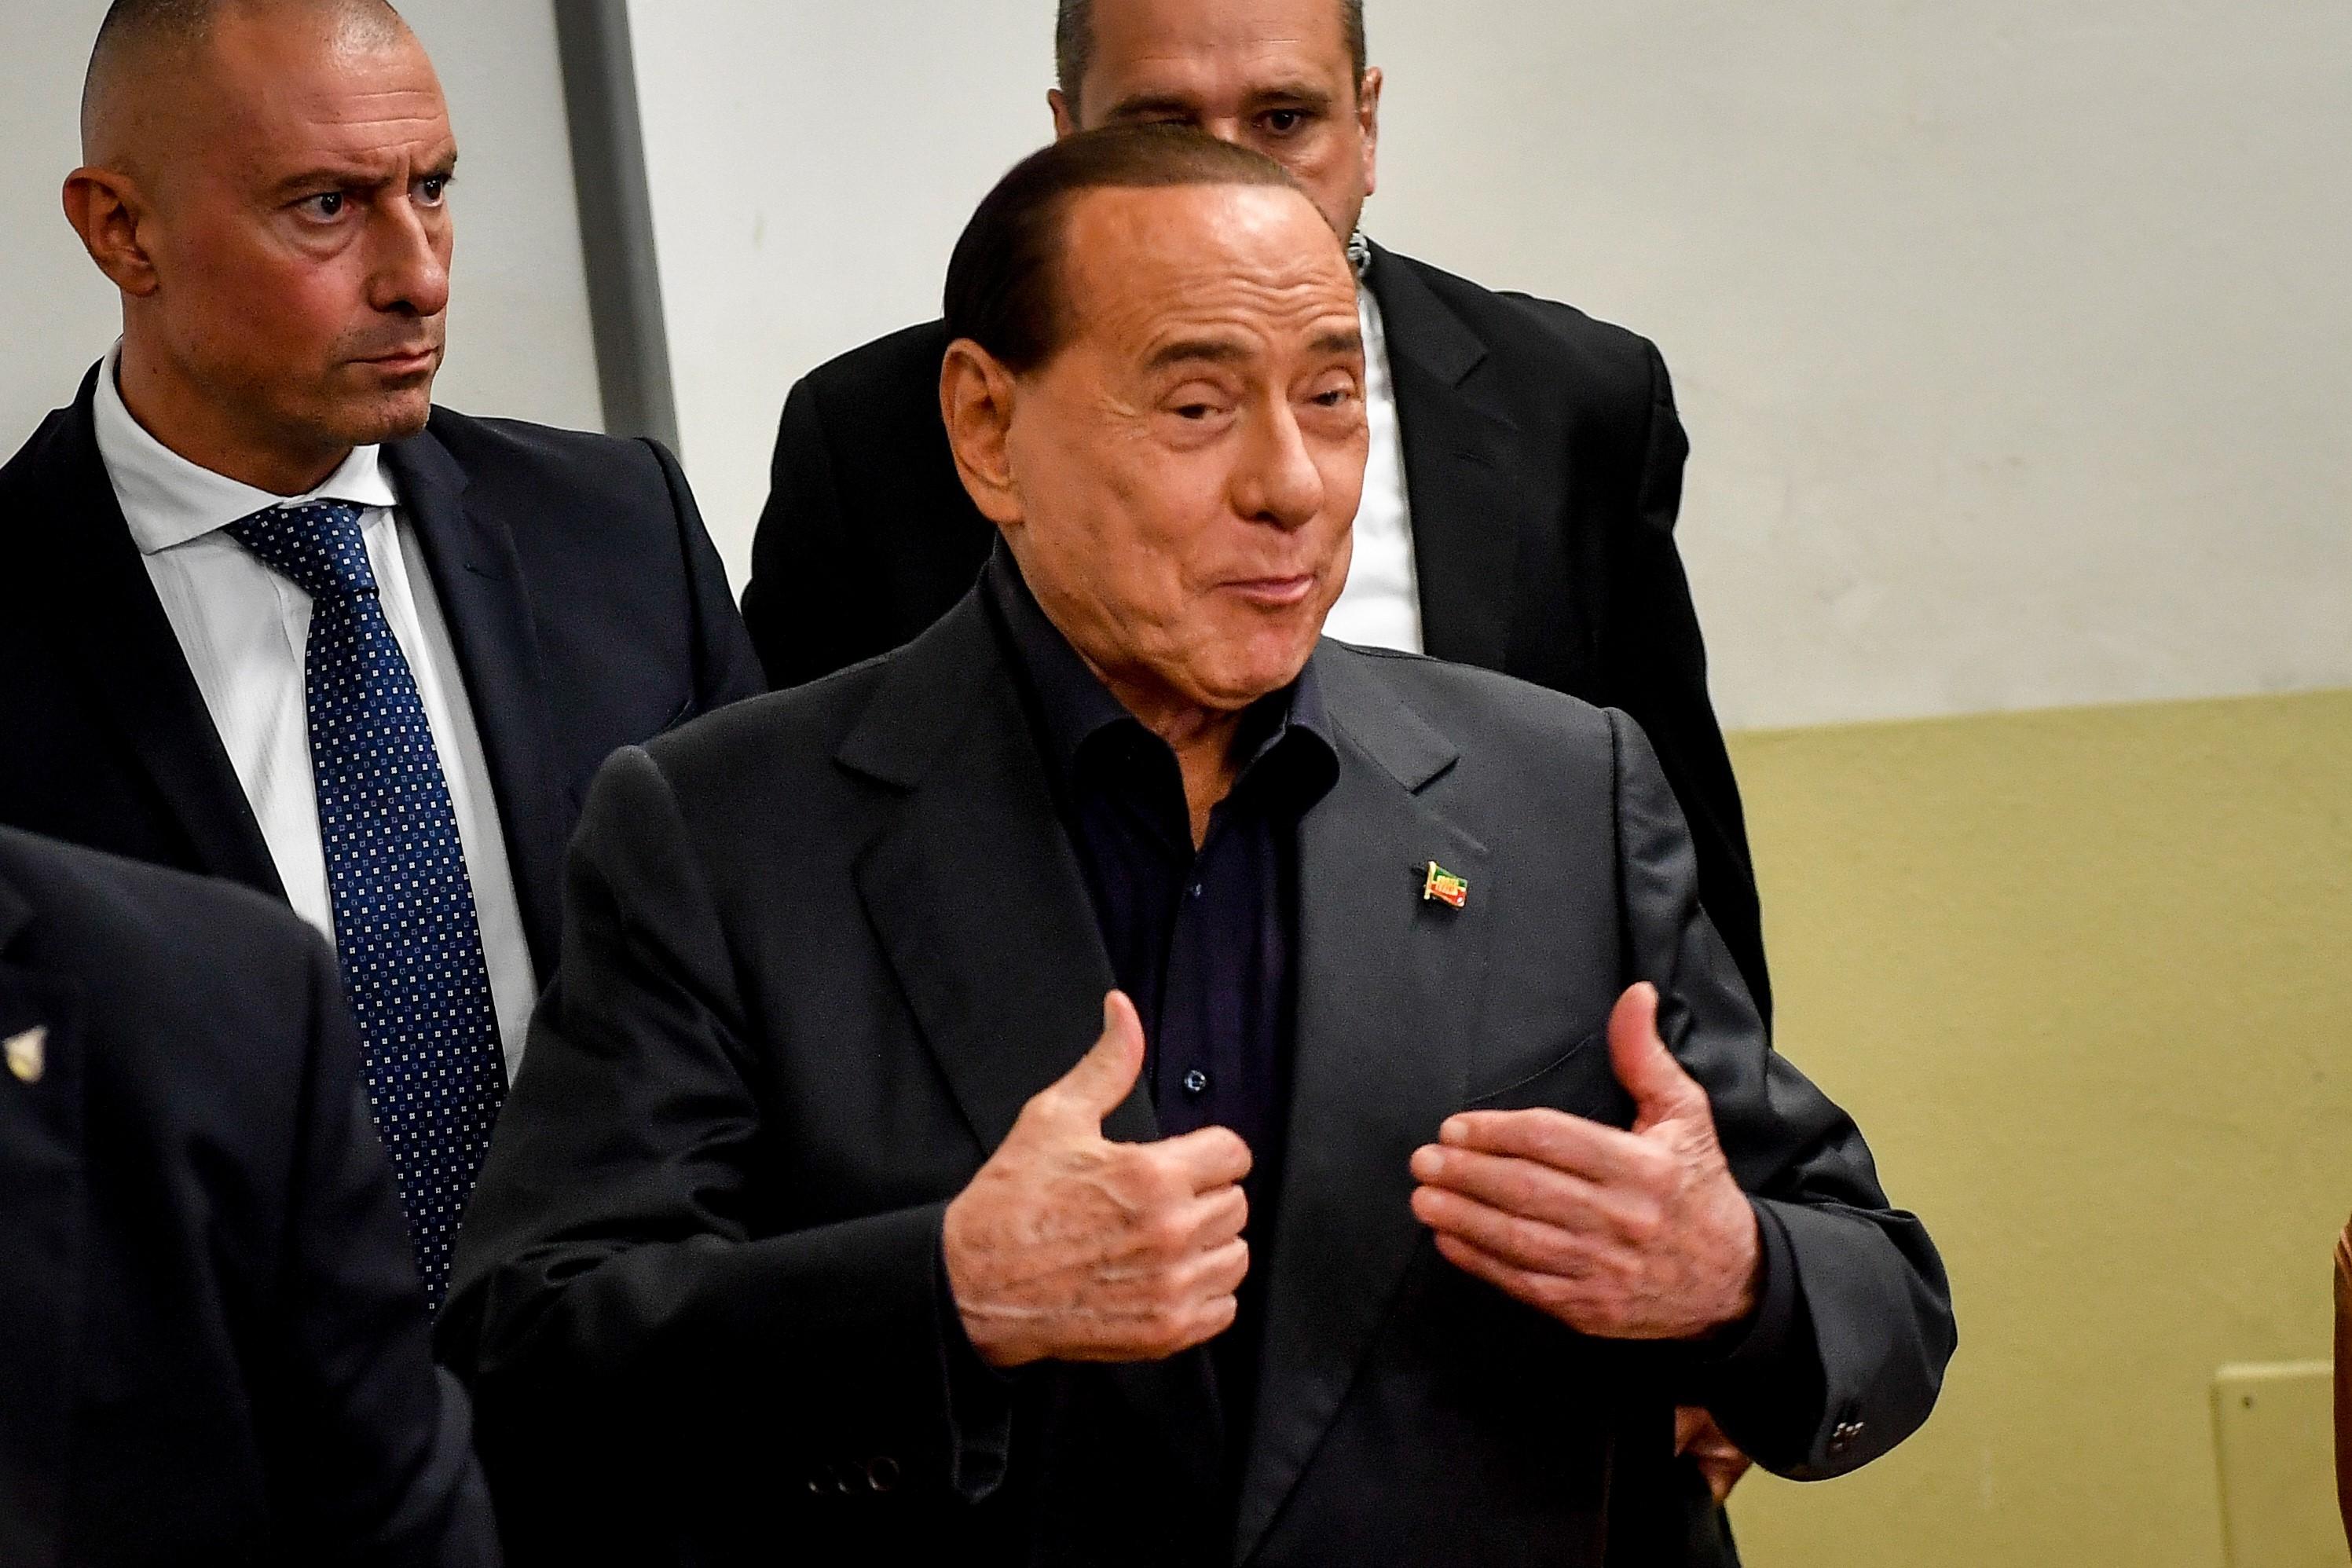 El exministro Silvio Berlusconi, candidato de Forza Italia. EP